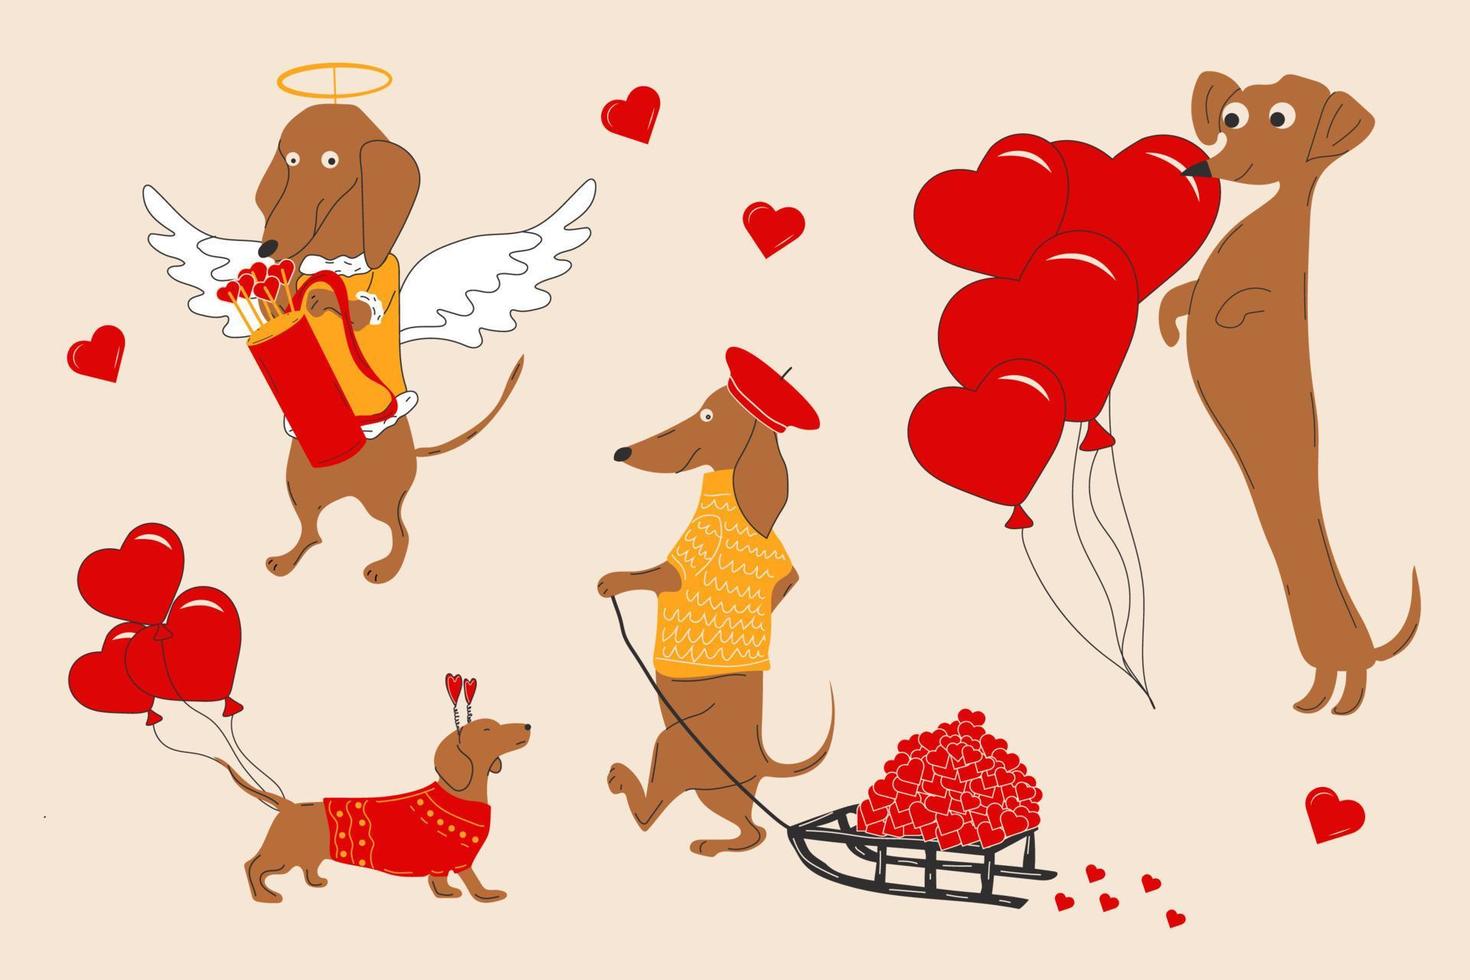 les chiens teckels tirent un coeur, des valentines sur un traîneau et décorent des ballons en forme de coeur. illustration vectorielle vecteur